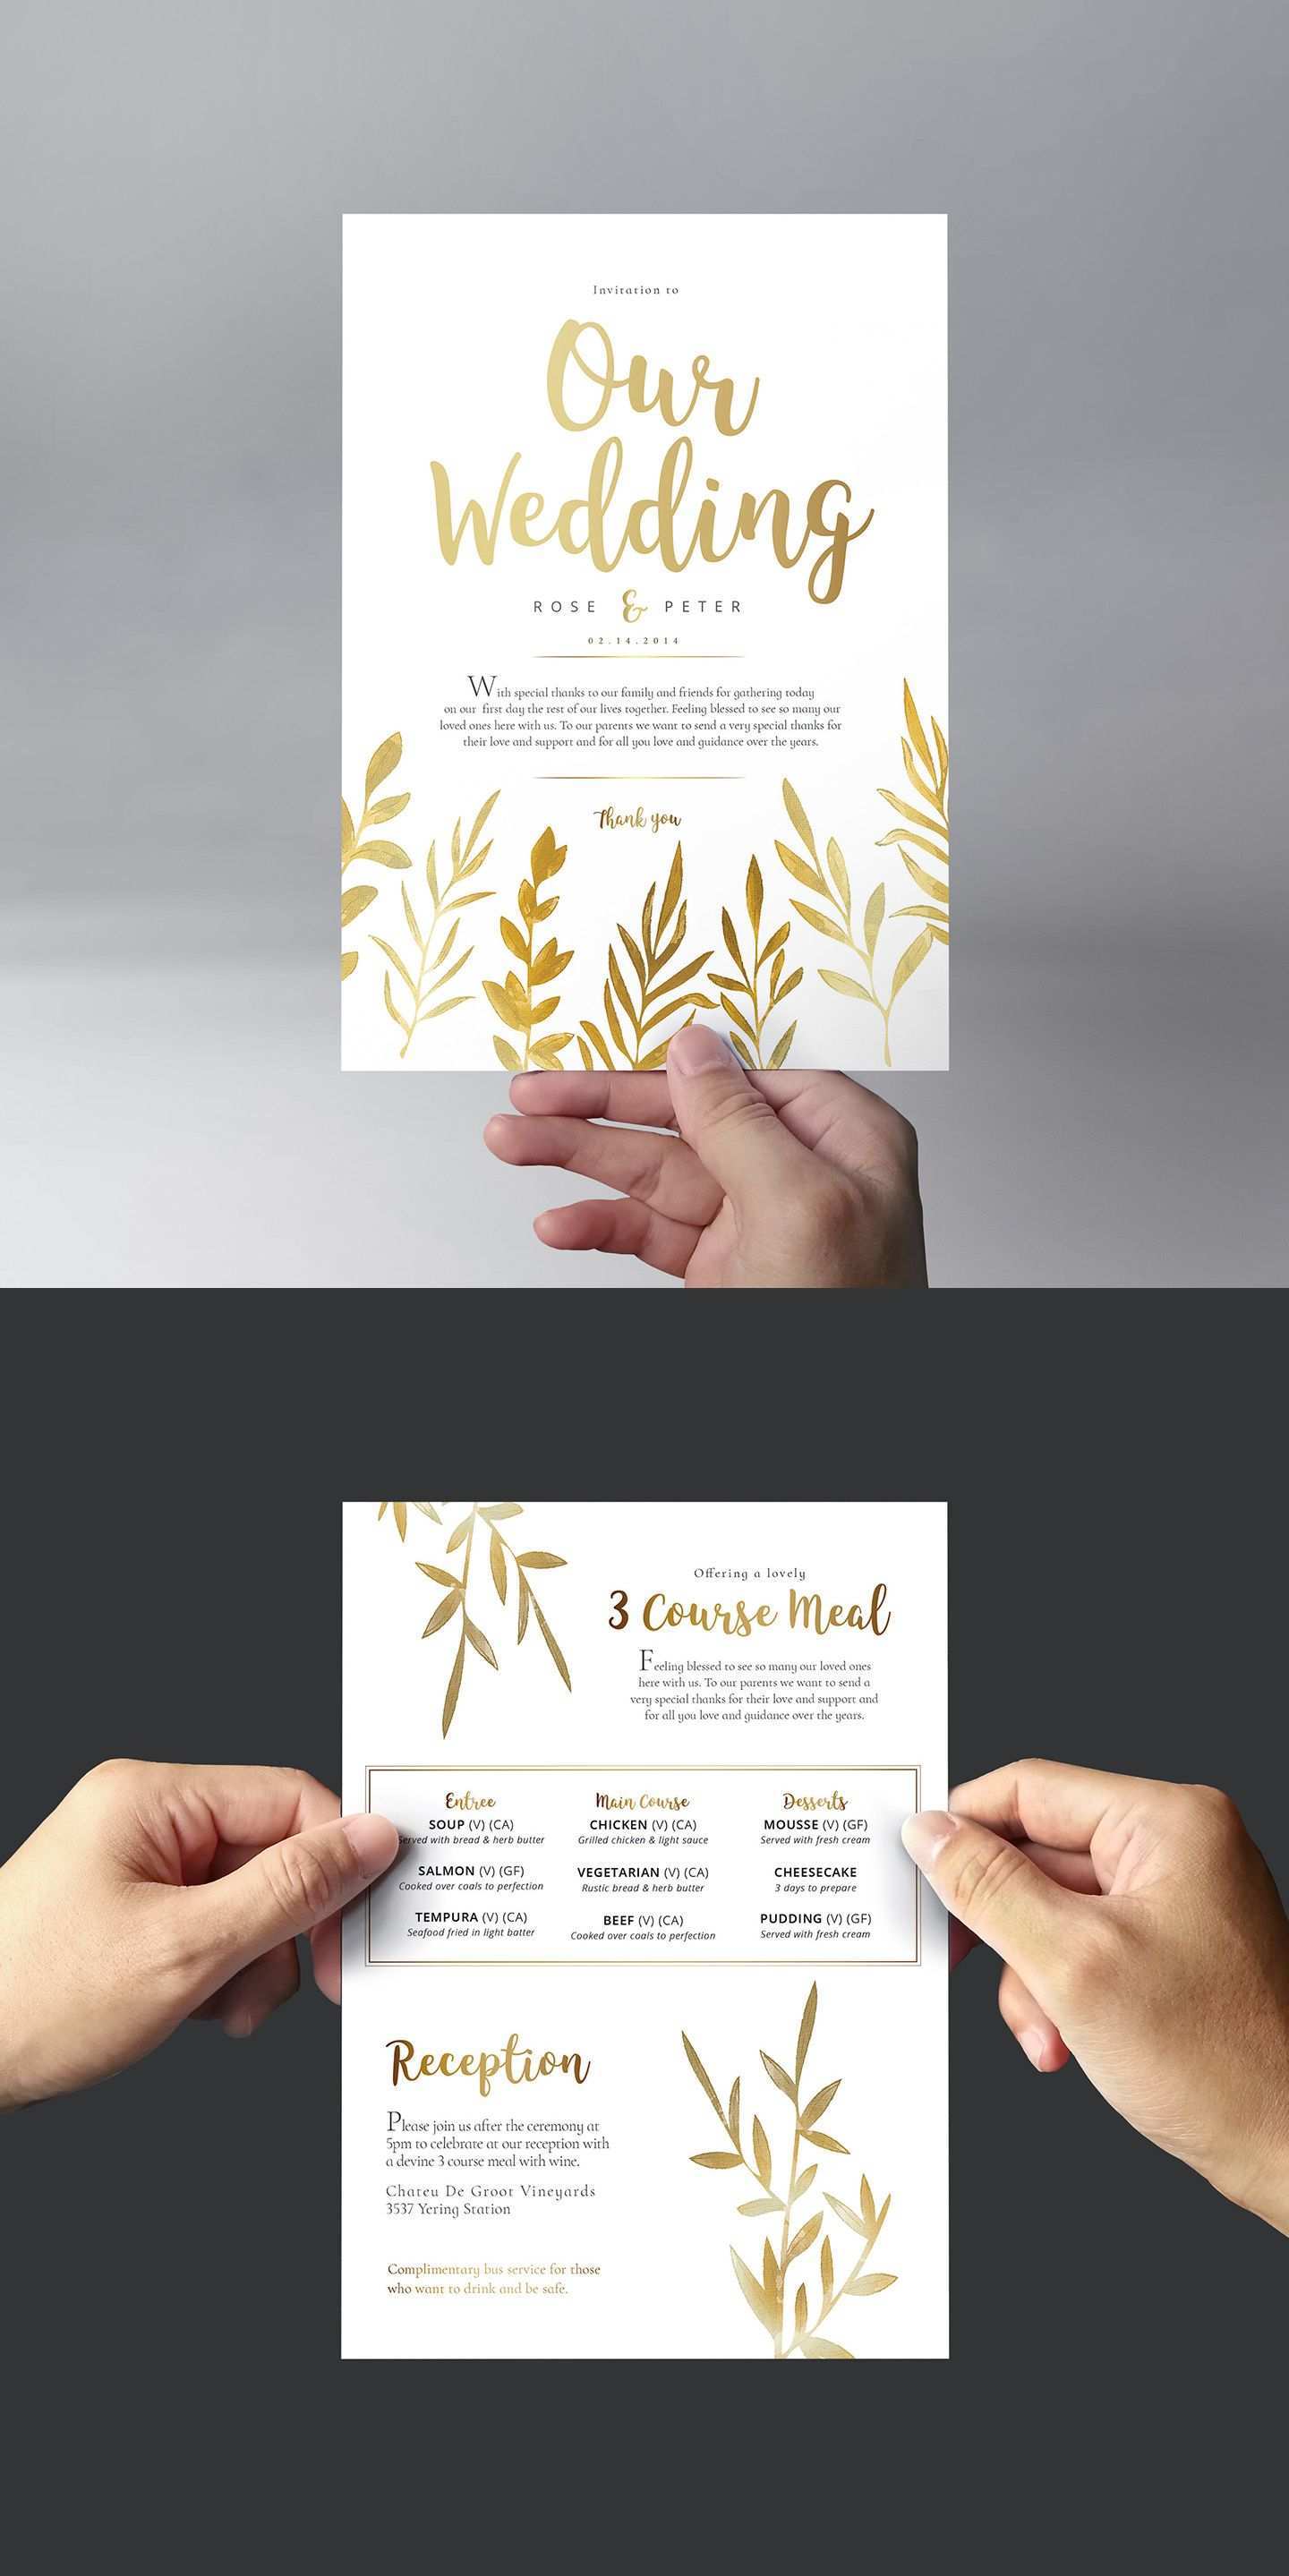 37 Create Adobe Illustrator Wedding Invitation Template Free Now for Adobe Illustrator Wedding Invitation Template Free